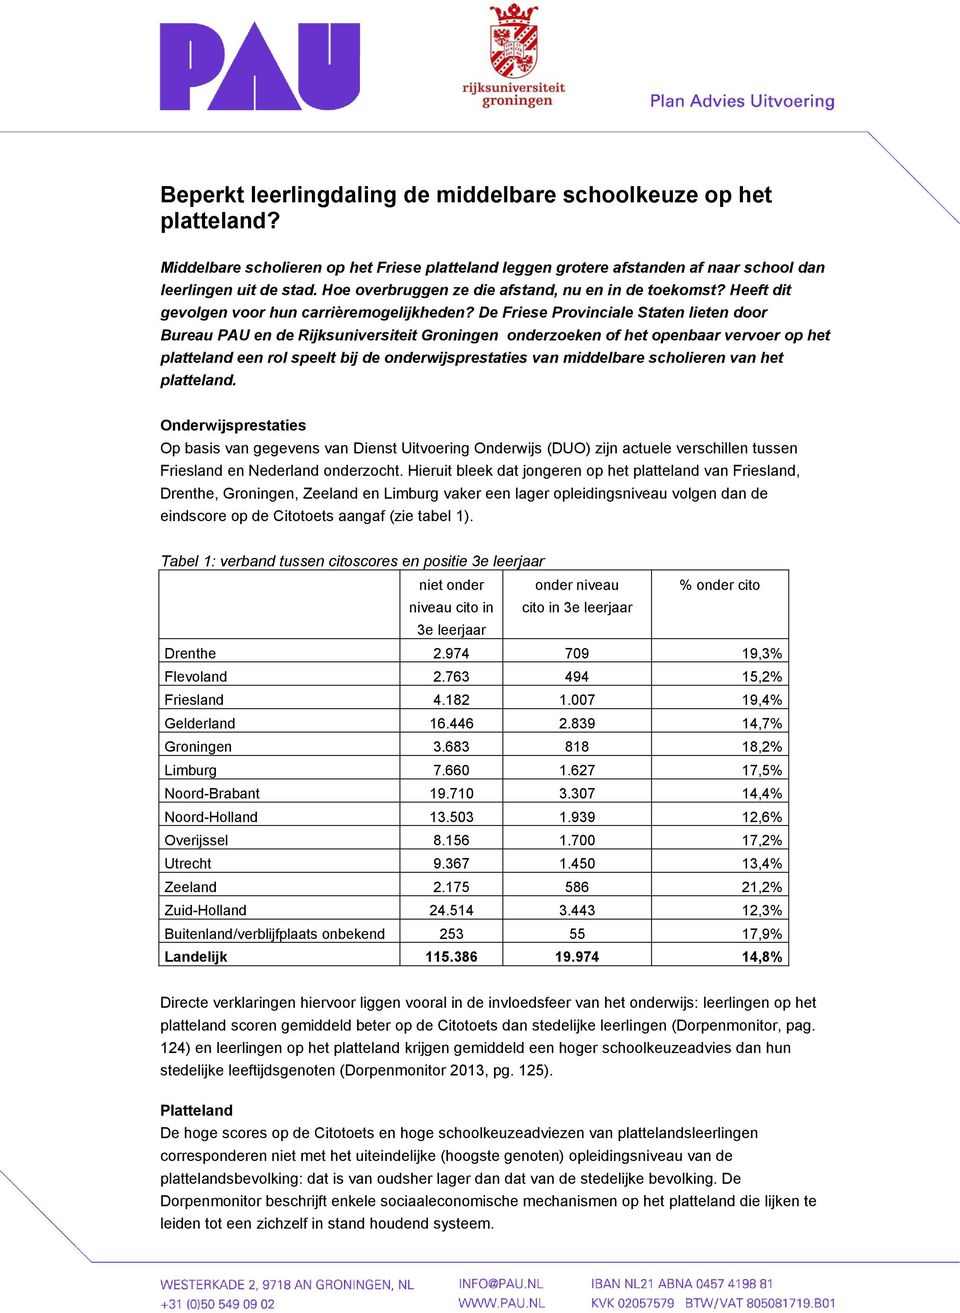 De Friese Provinciale Staten lieten door Bureau PAU en de Rijksuniversiteit Groningen onderzoeken of het openbaar vervoer op het platteland een rol speelt bij de onderwijsprestaties van middelbare